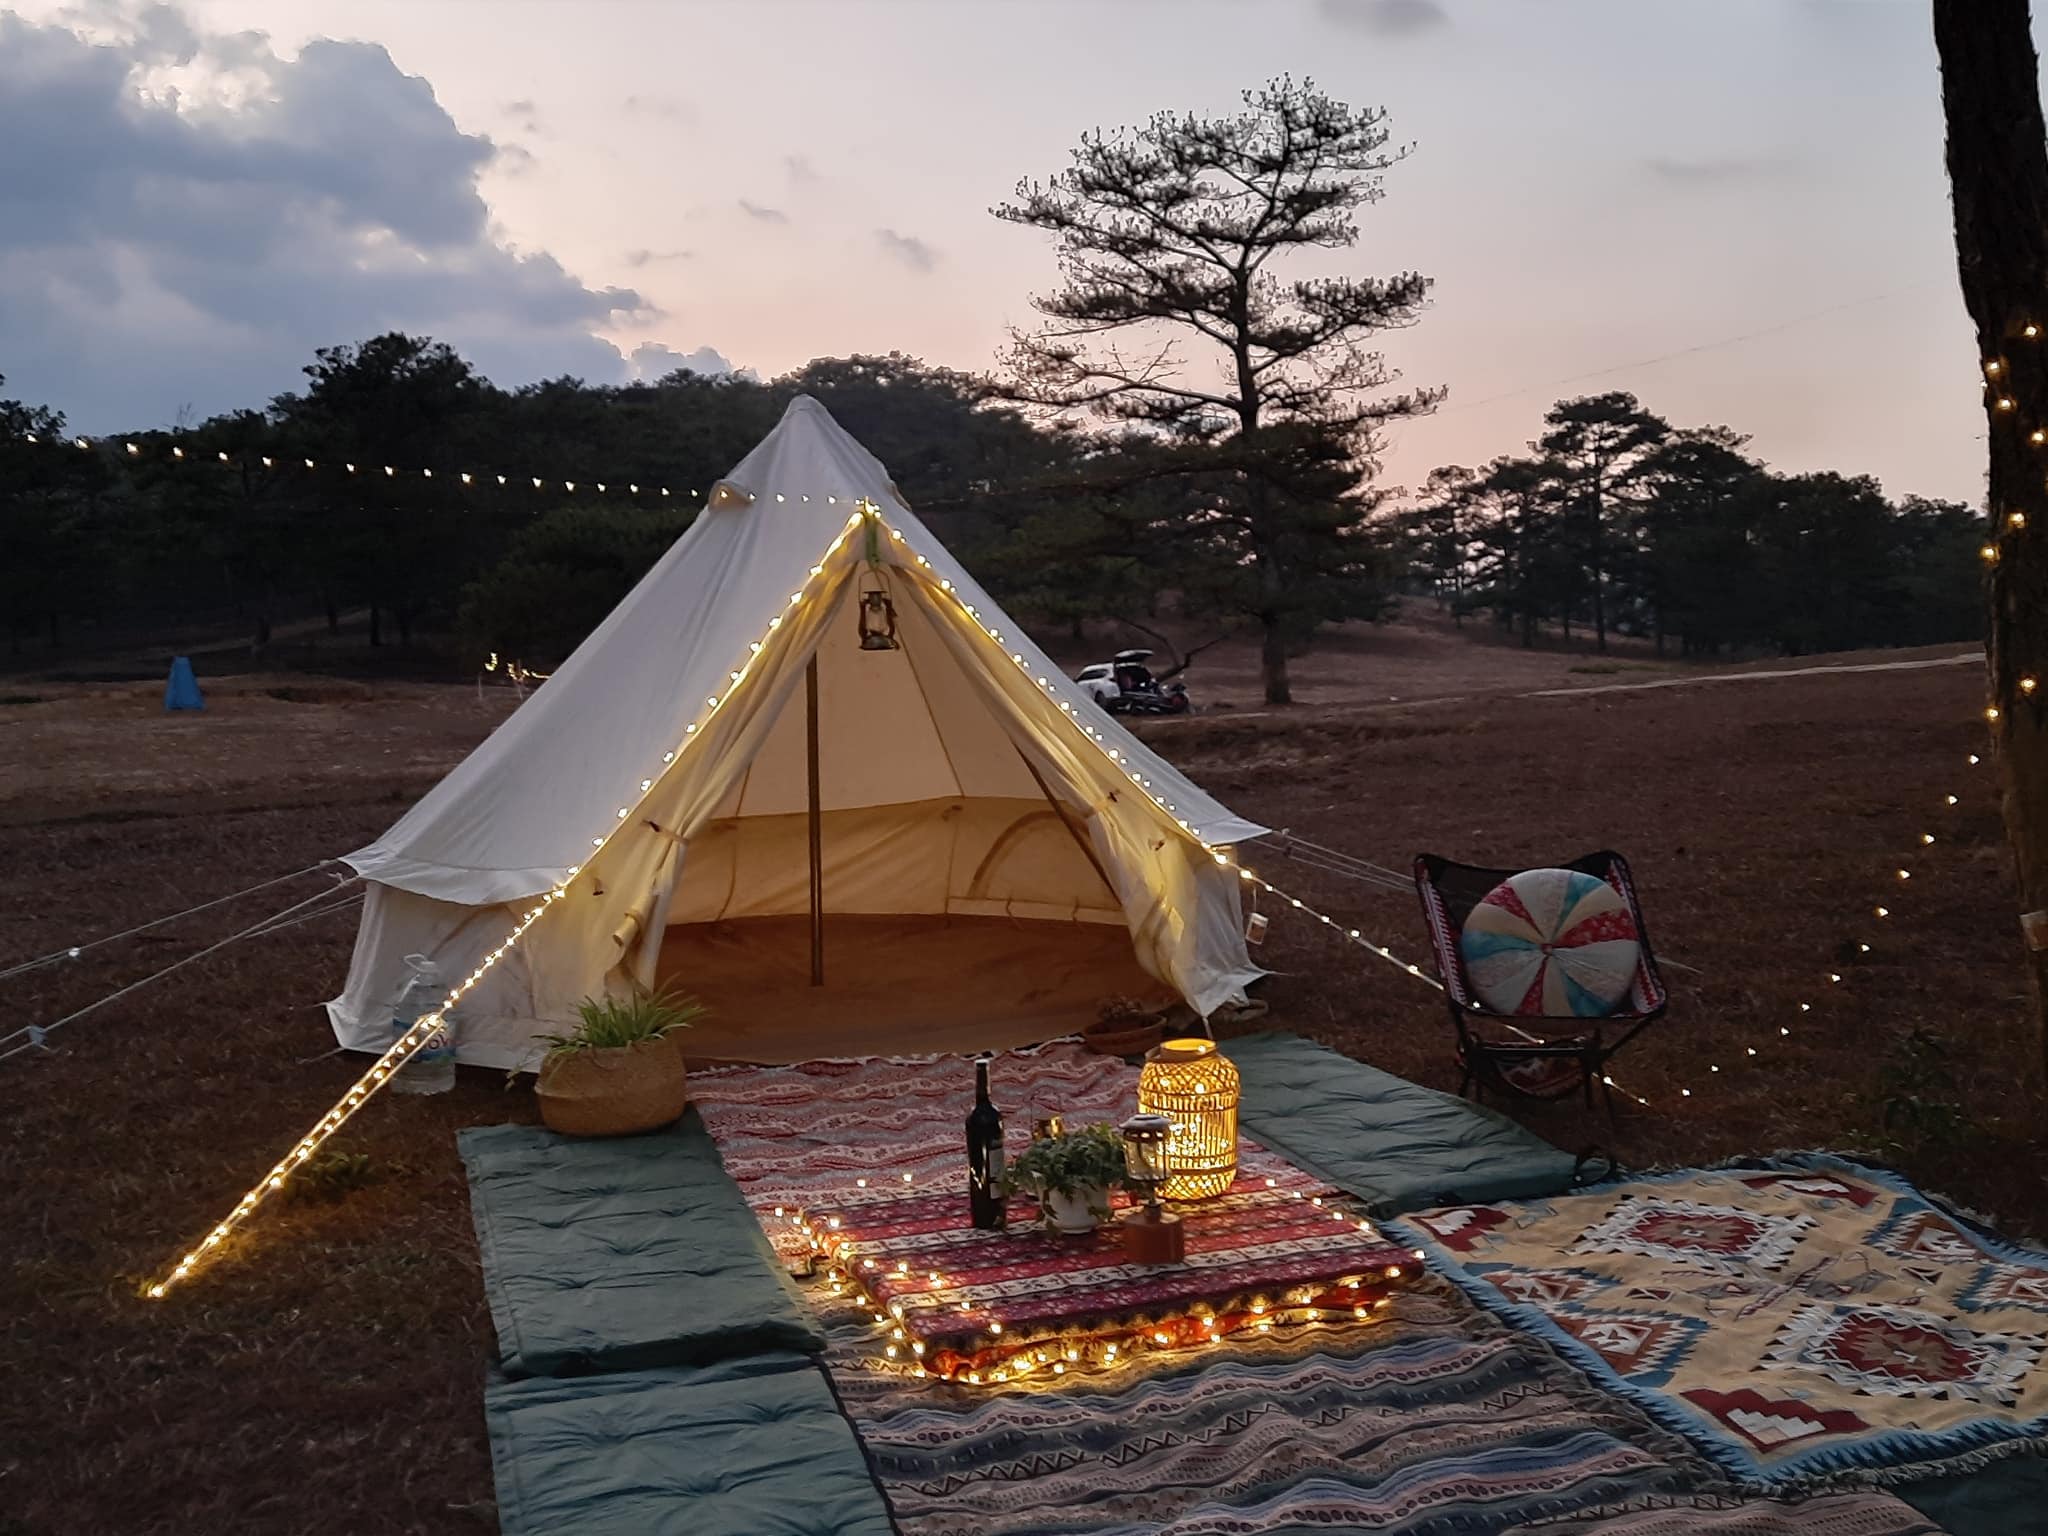 Tour cắm trại - Glamping sang chảnh tại Đà Lạt | Trekking - Camping